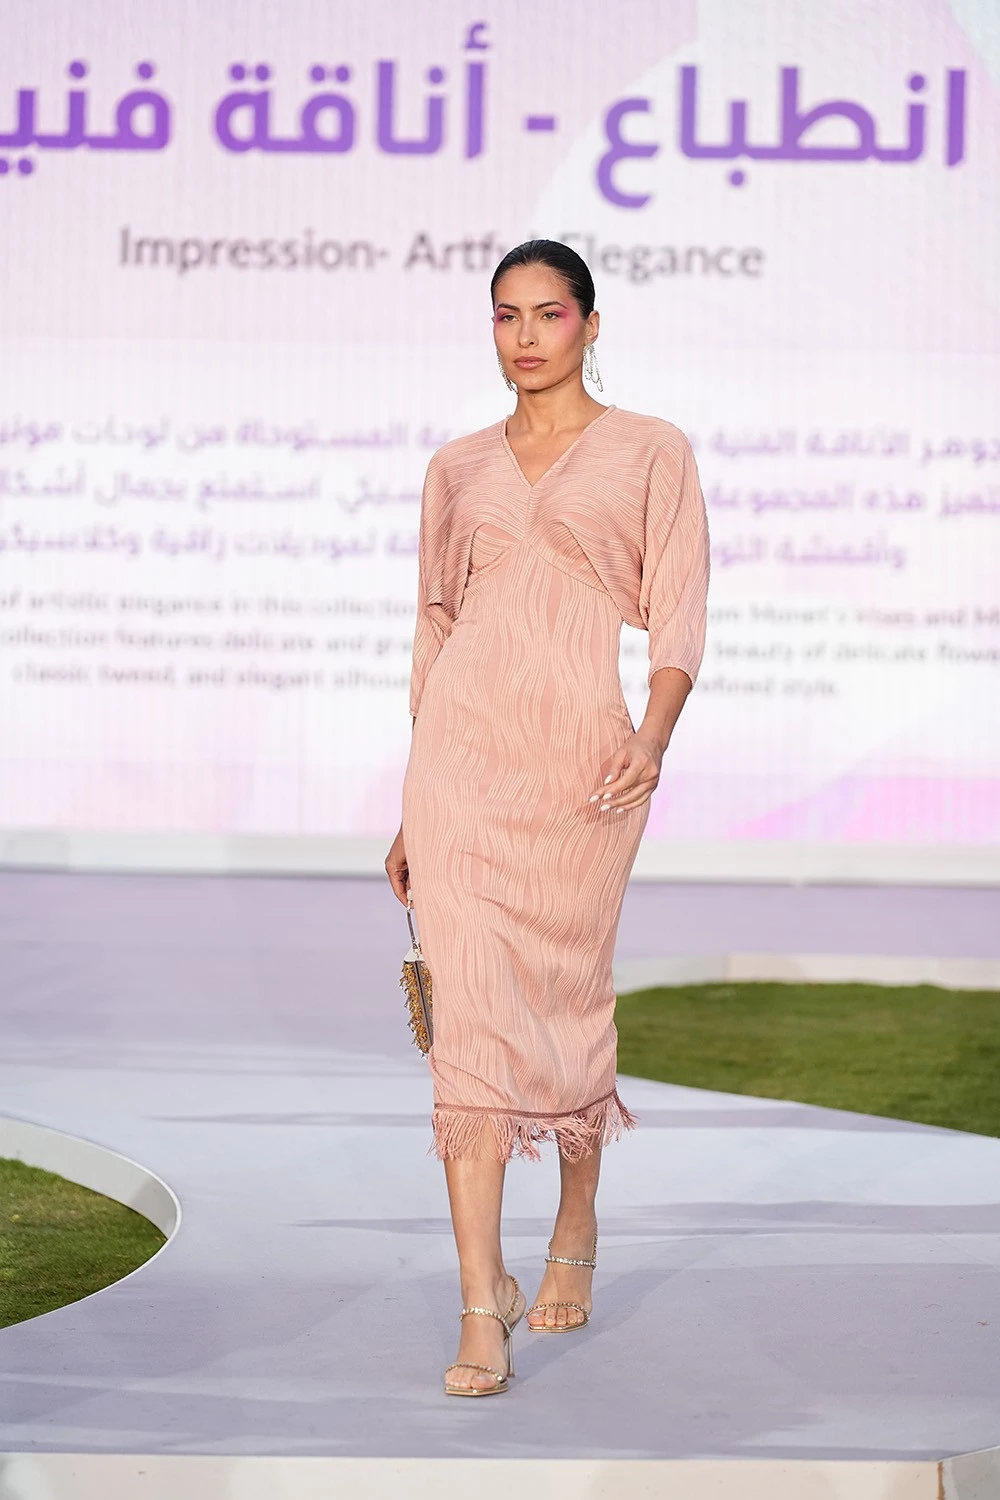 SHEIN أقامت أول عرض أزياء في الرياض مع حفل عشاء ومزاد خيري